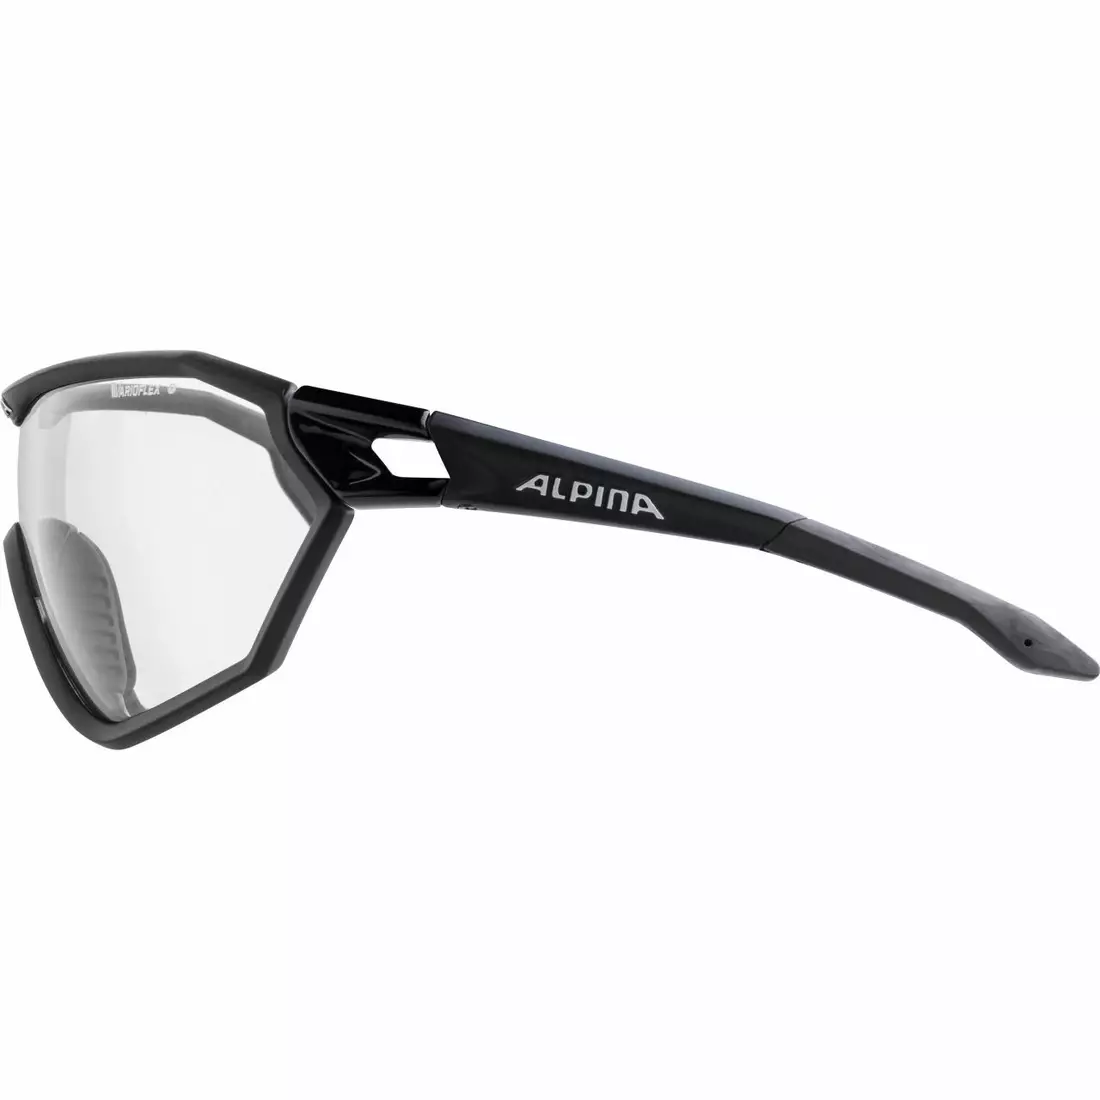 ALPINA S-WAY L VL+ cyklistické brýle barva ČERNÉ MATNÉ sklo ČERNÉ S1-3 FOGSTOP A8624131